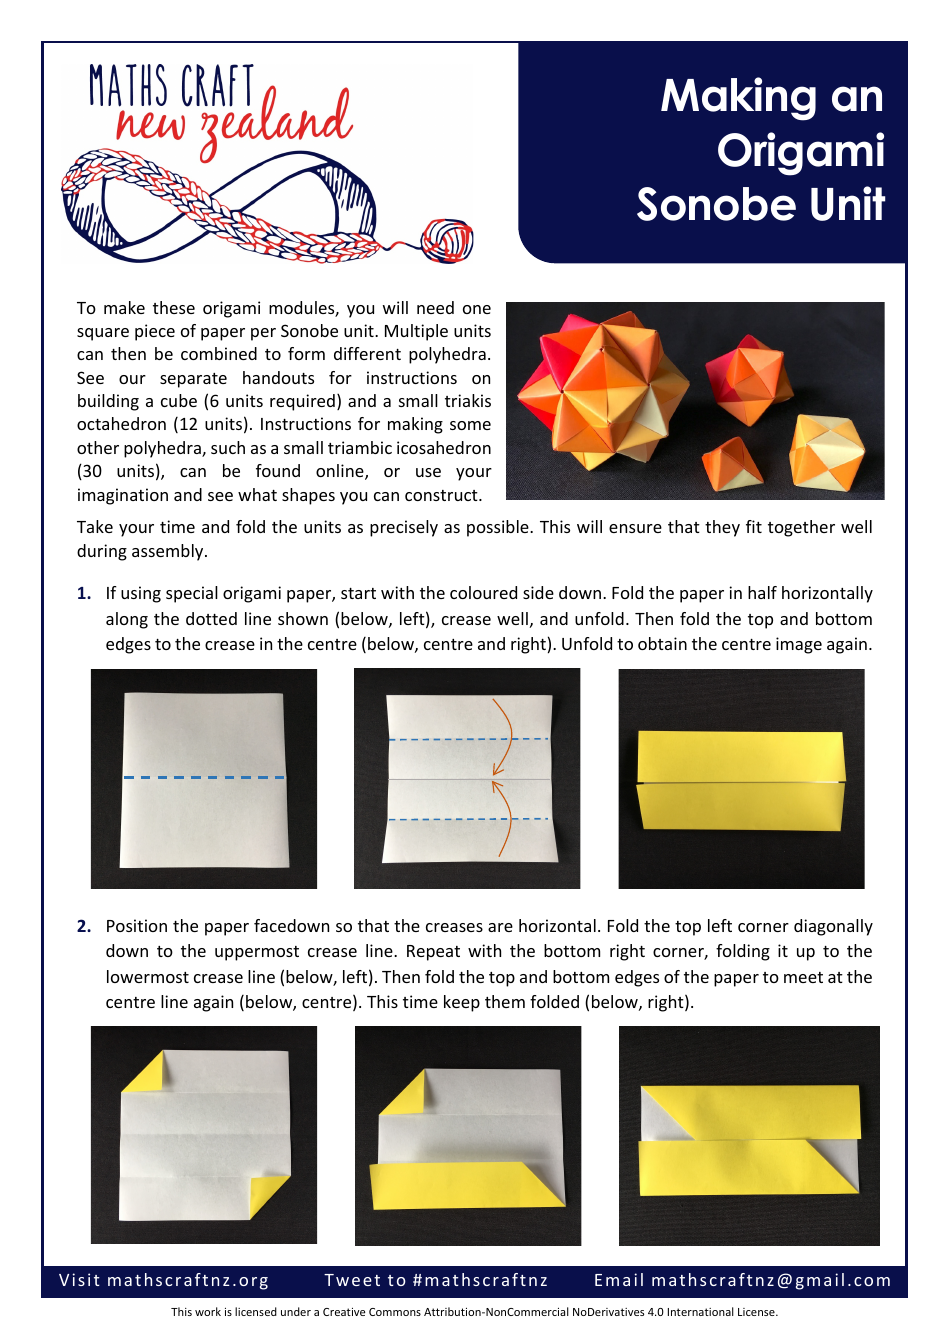 Origami Paper Sonobe Unit - Create Stunning Modular Designs